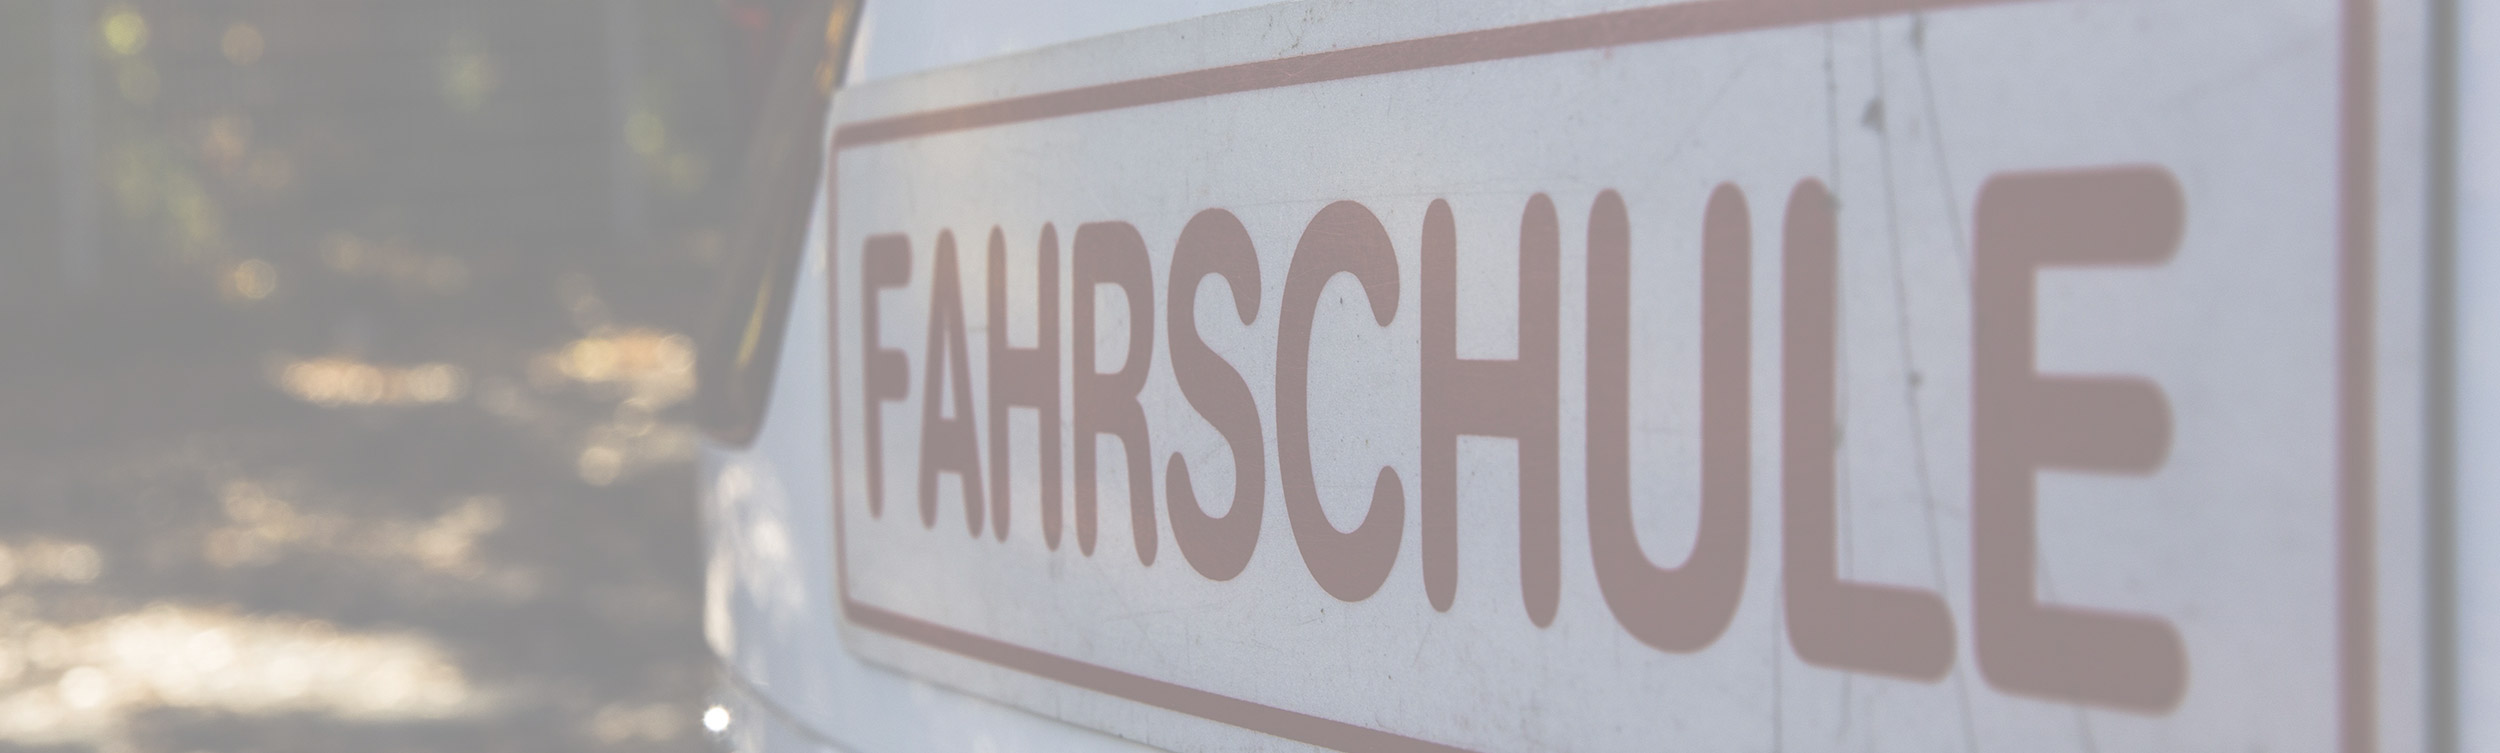 Fahrschule Schiffer - Home